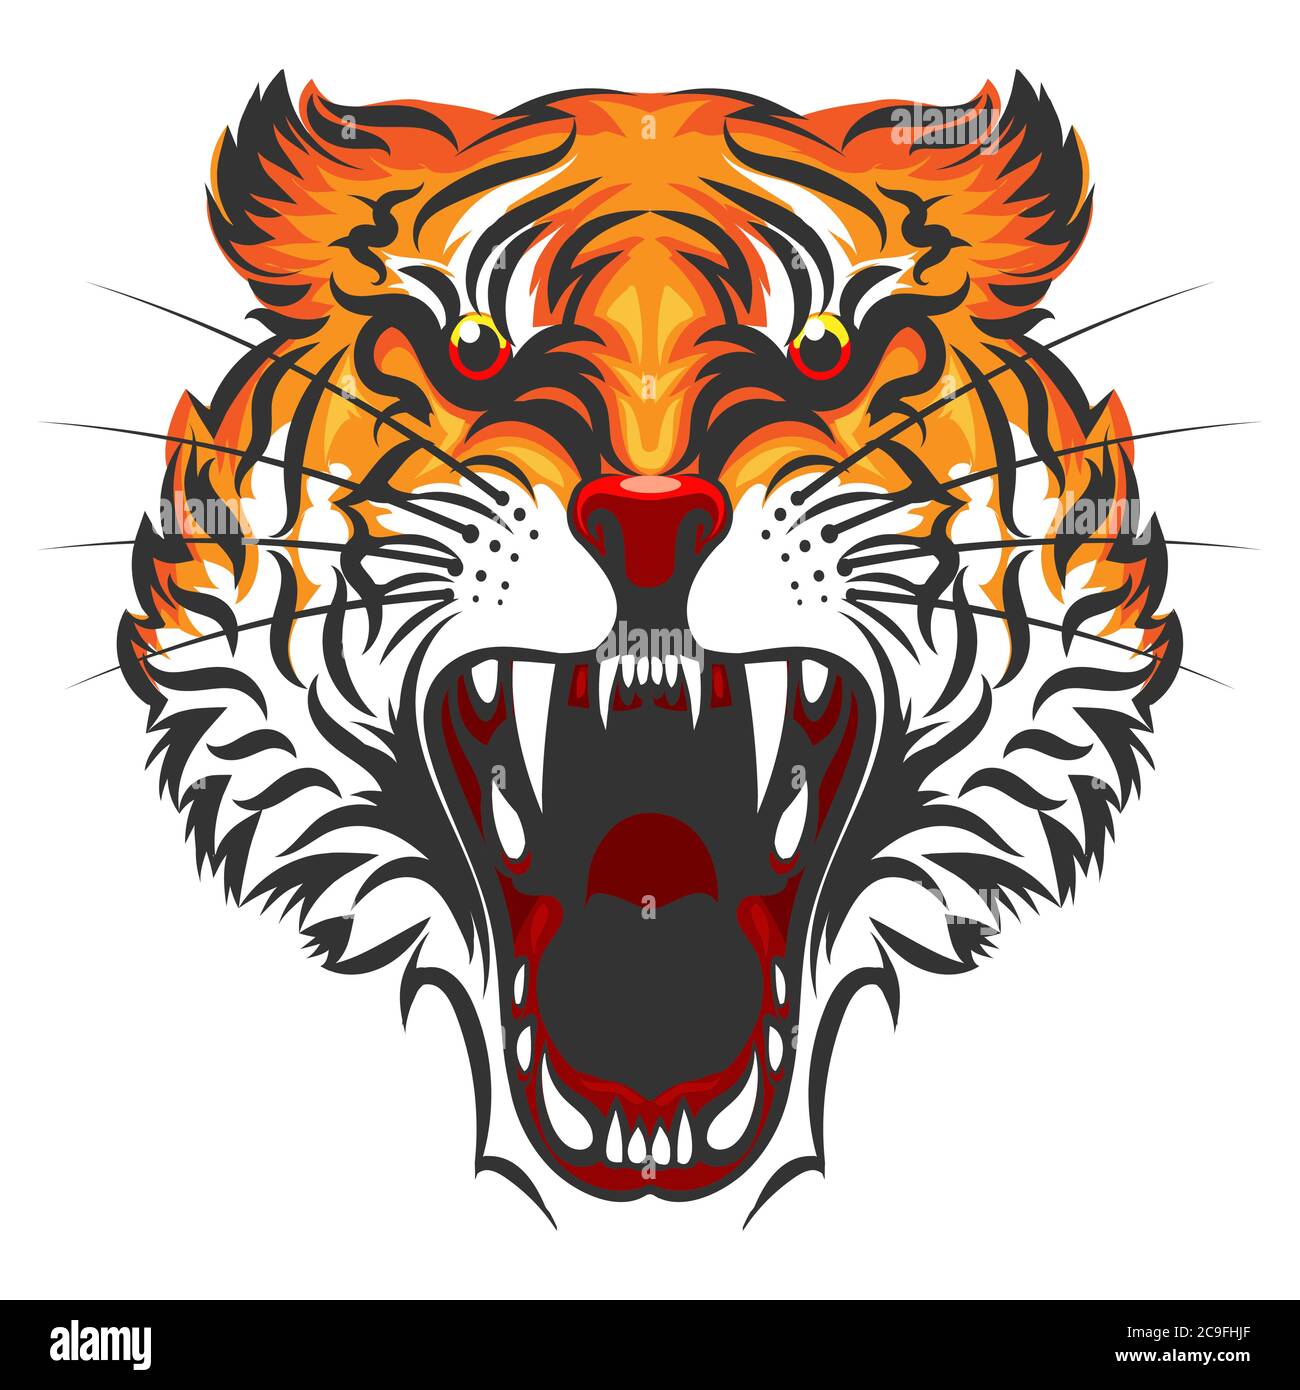 Dessin animé Angry Tiger face isolé sur fond blanc. Illustration vectorielle. Illustration de Vecteur